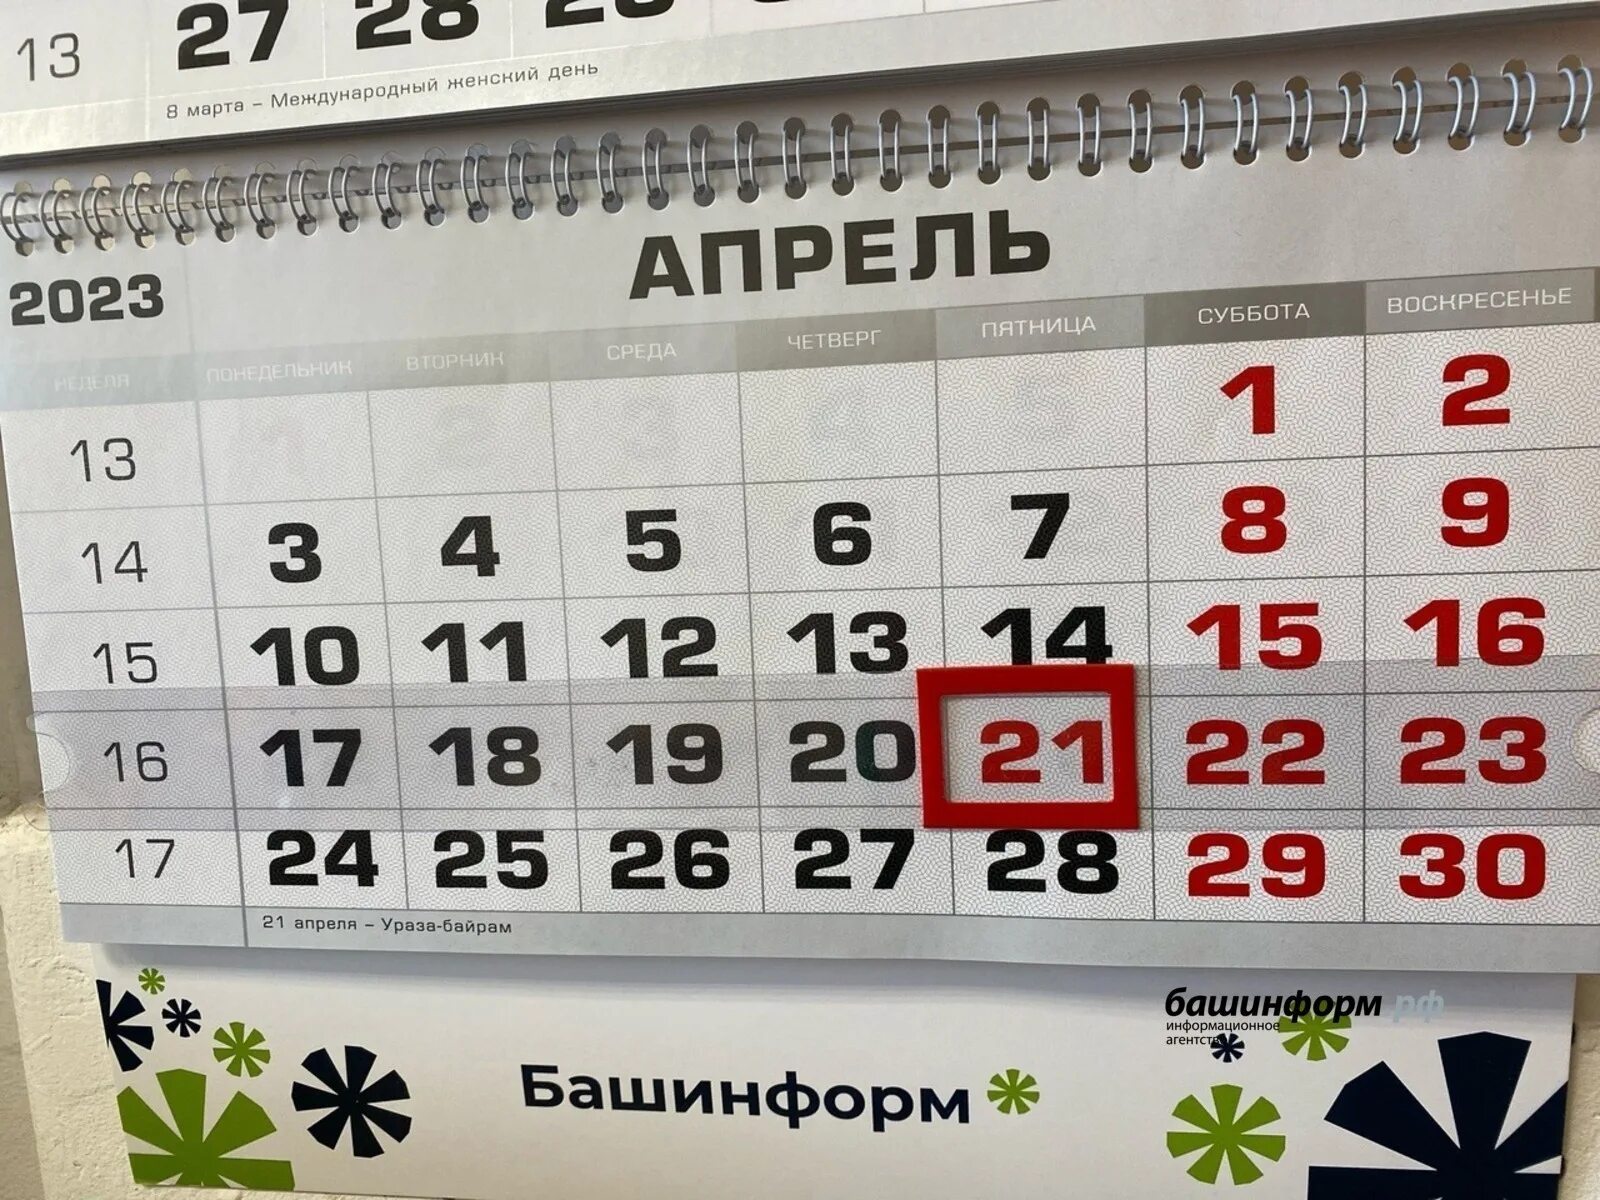 29 апреля 24 года выходной. Праздники в апреле 2023 выходные. Выходные дни в апреле. Календарь апрельских праздников. Праздничные дни в апреле 2024 в Башкирии.